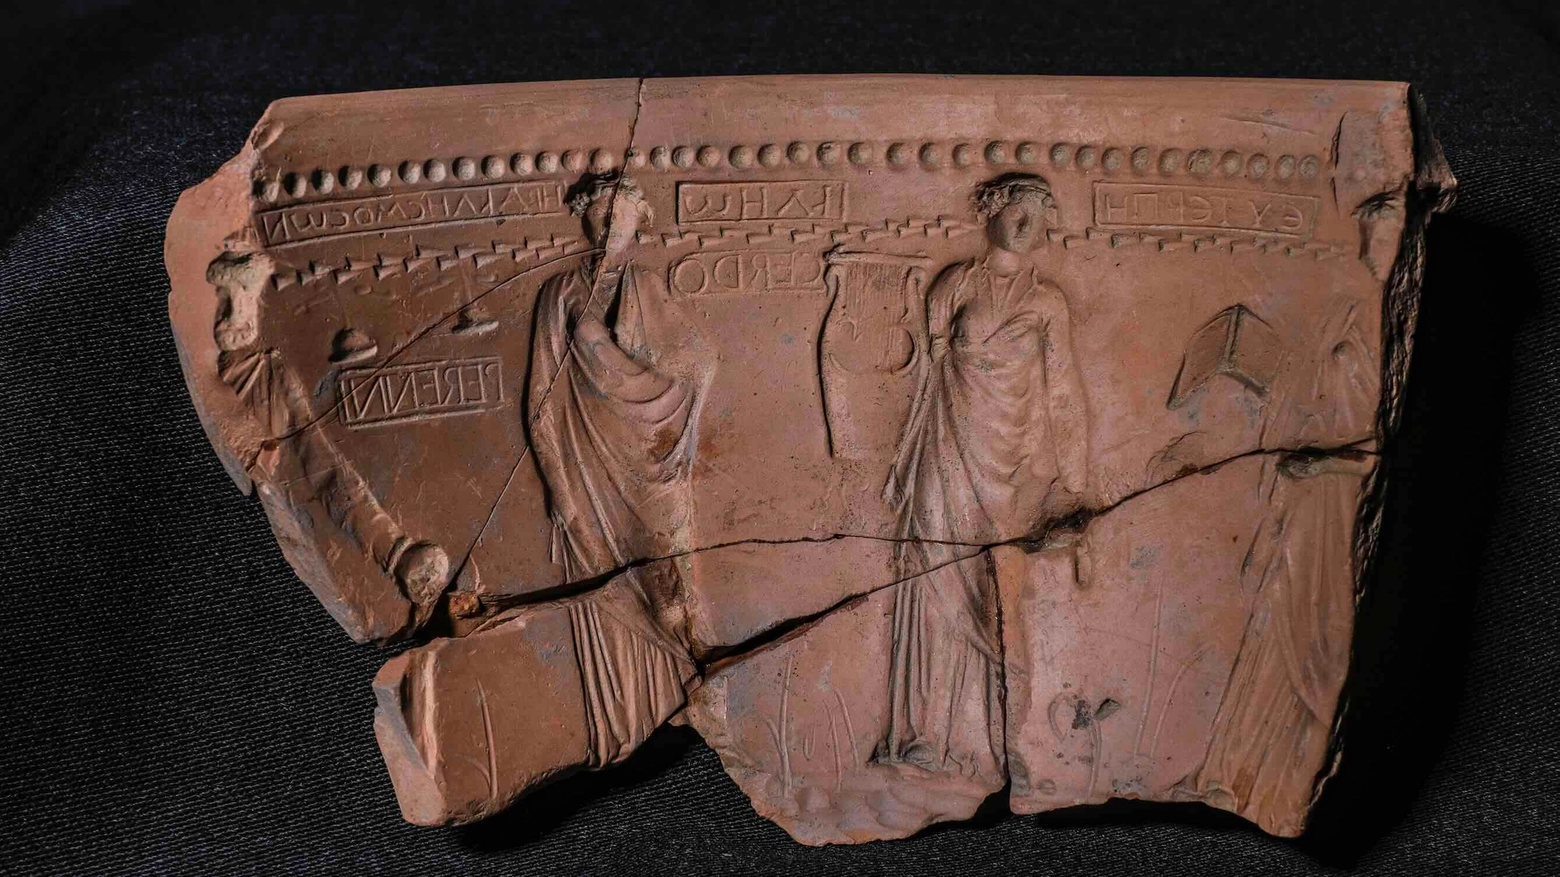 Il Museo Archeologico Nazionale ‘Gaio Cilnio Mecenate’ di Arezzo presenta una mostra che ripercorrere il legame tra la famiglia Vasari e la manifattura degli Arretina vasa